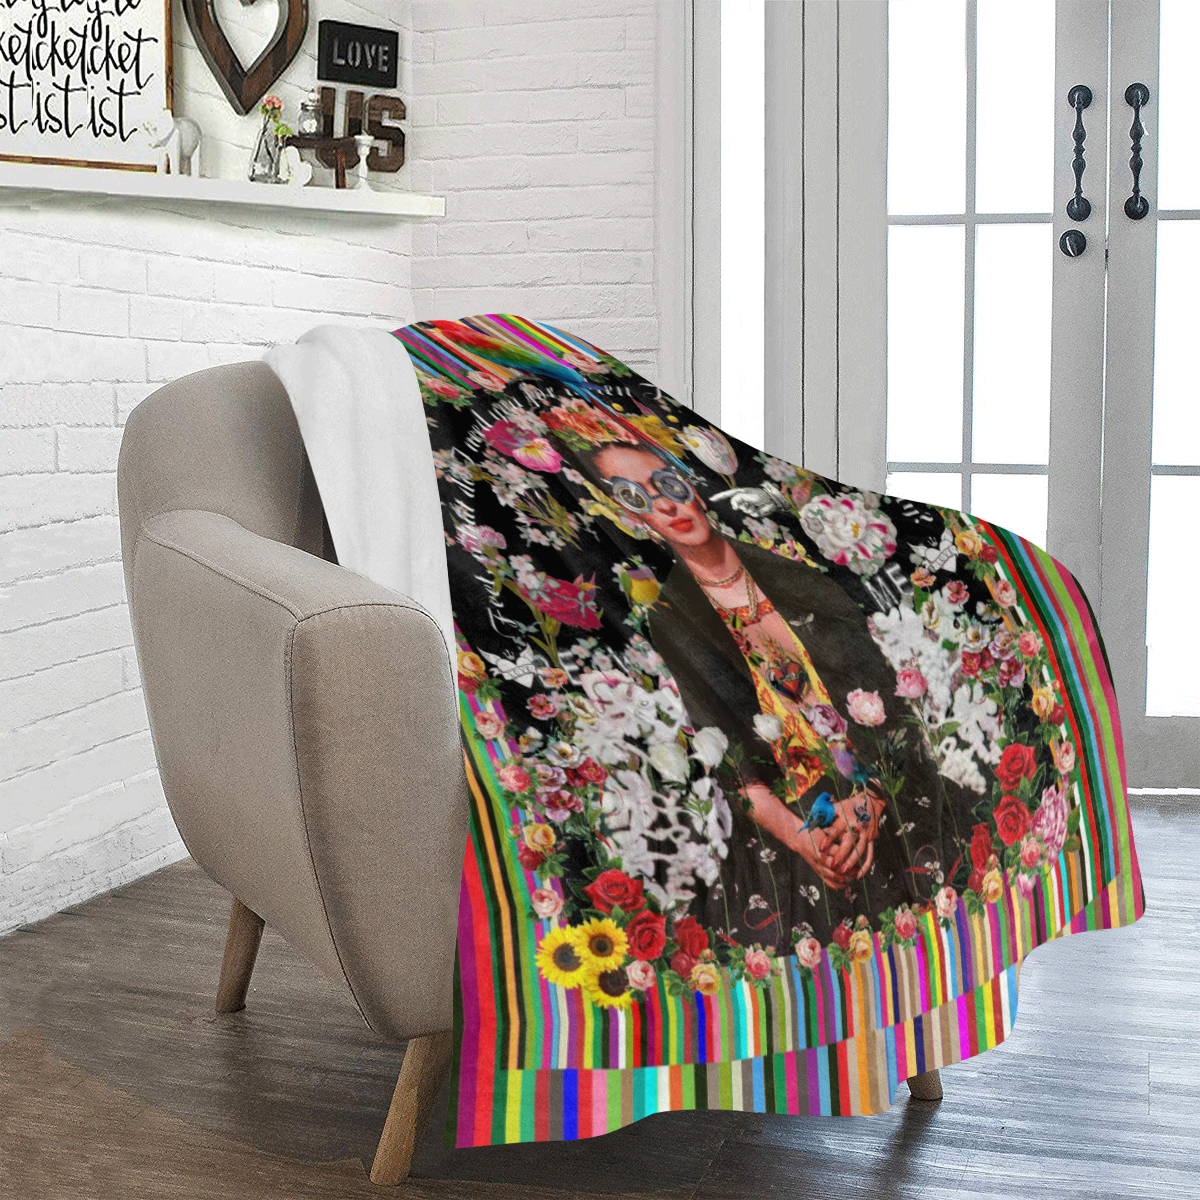 Frida Incognito Ultra-Soft Micro Fleece Blanket 50"x60"